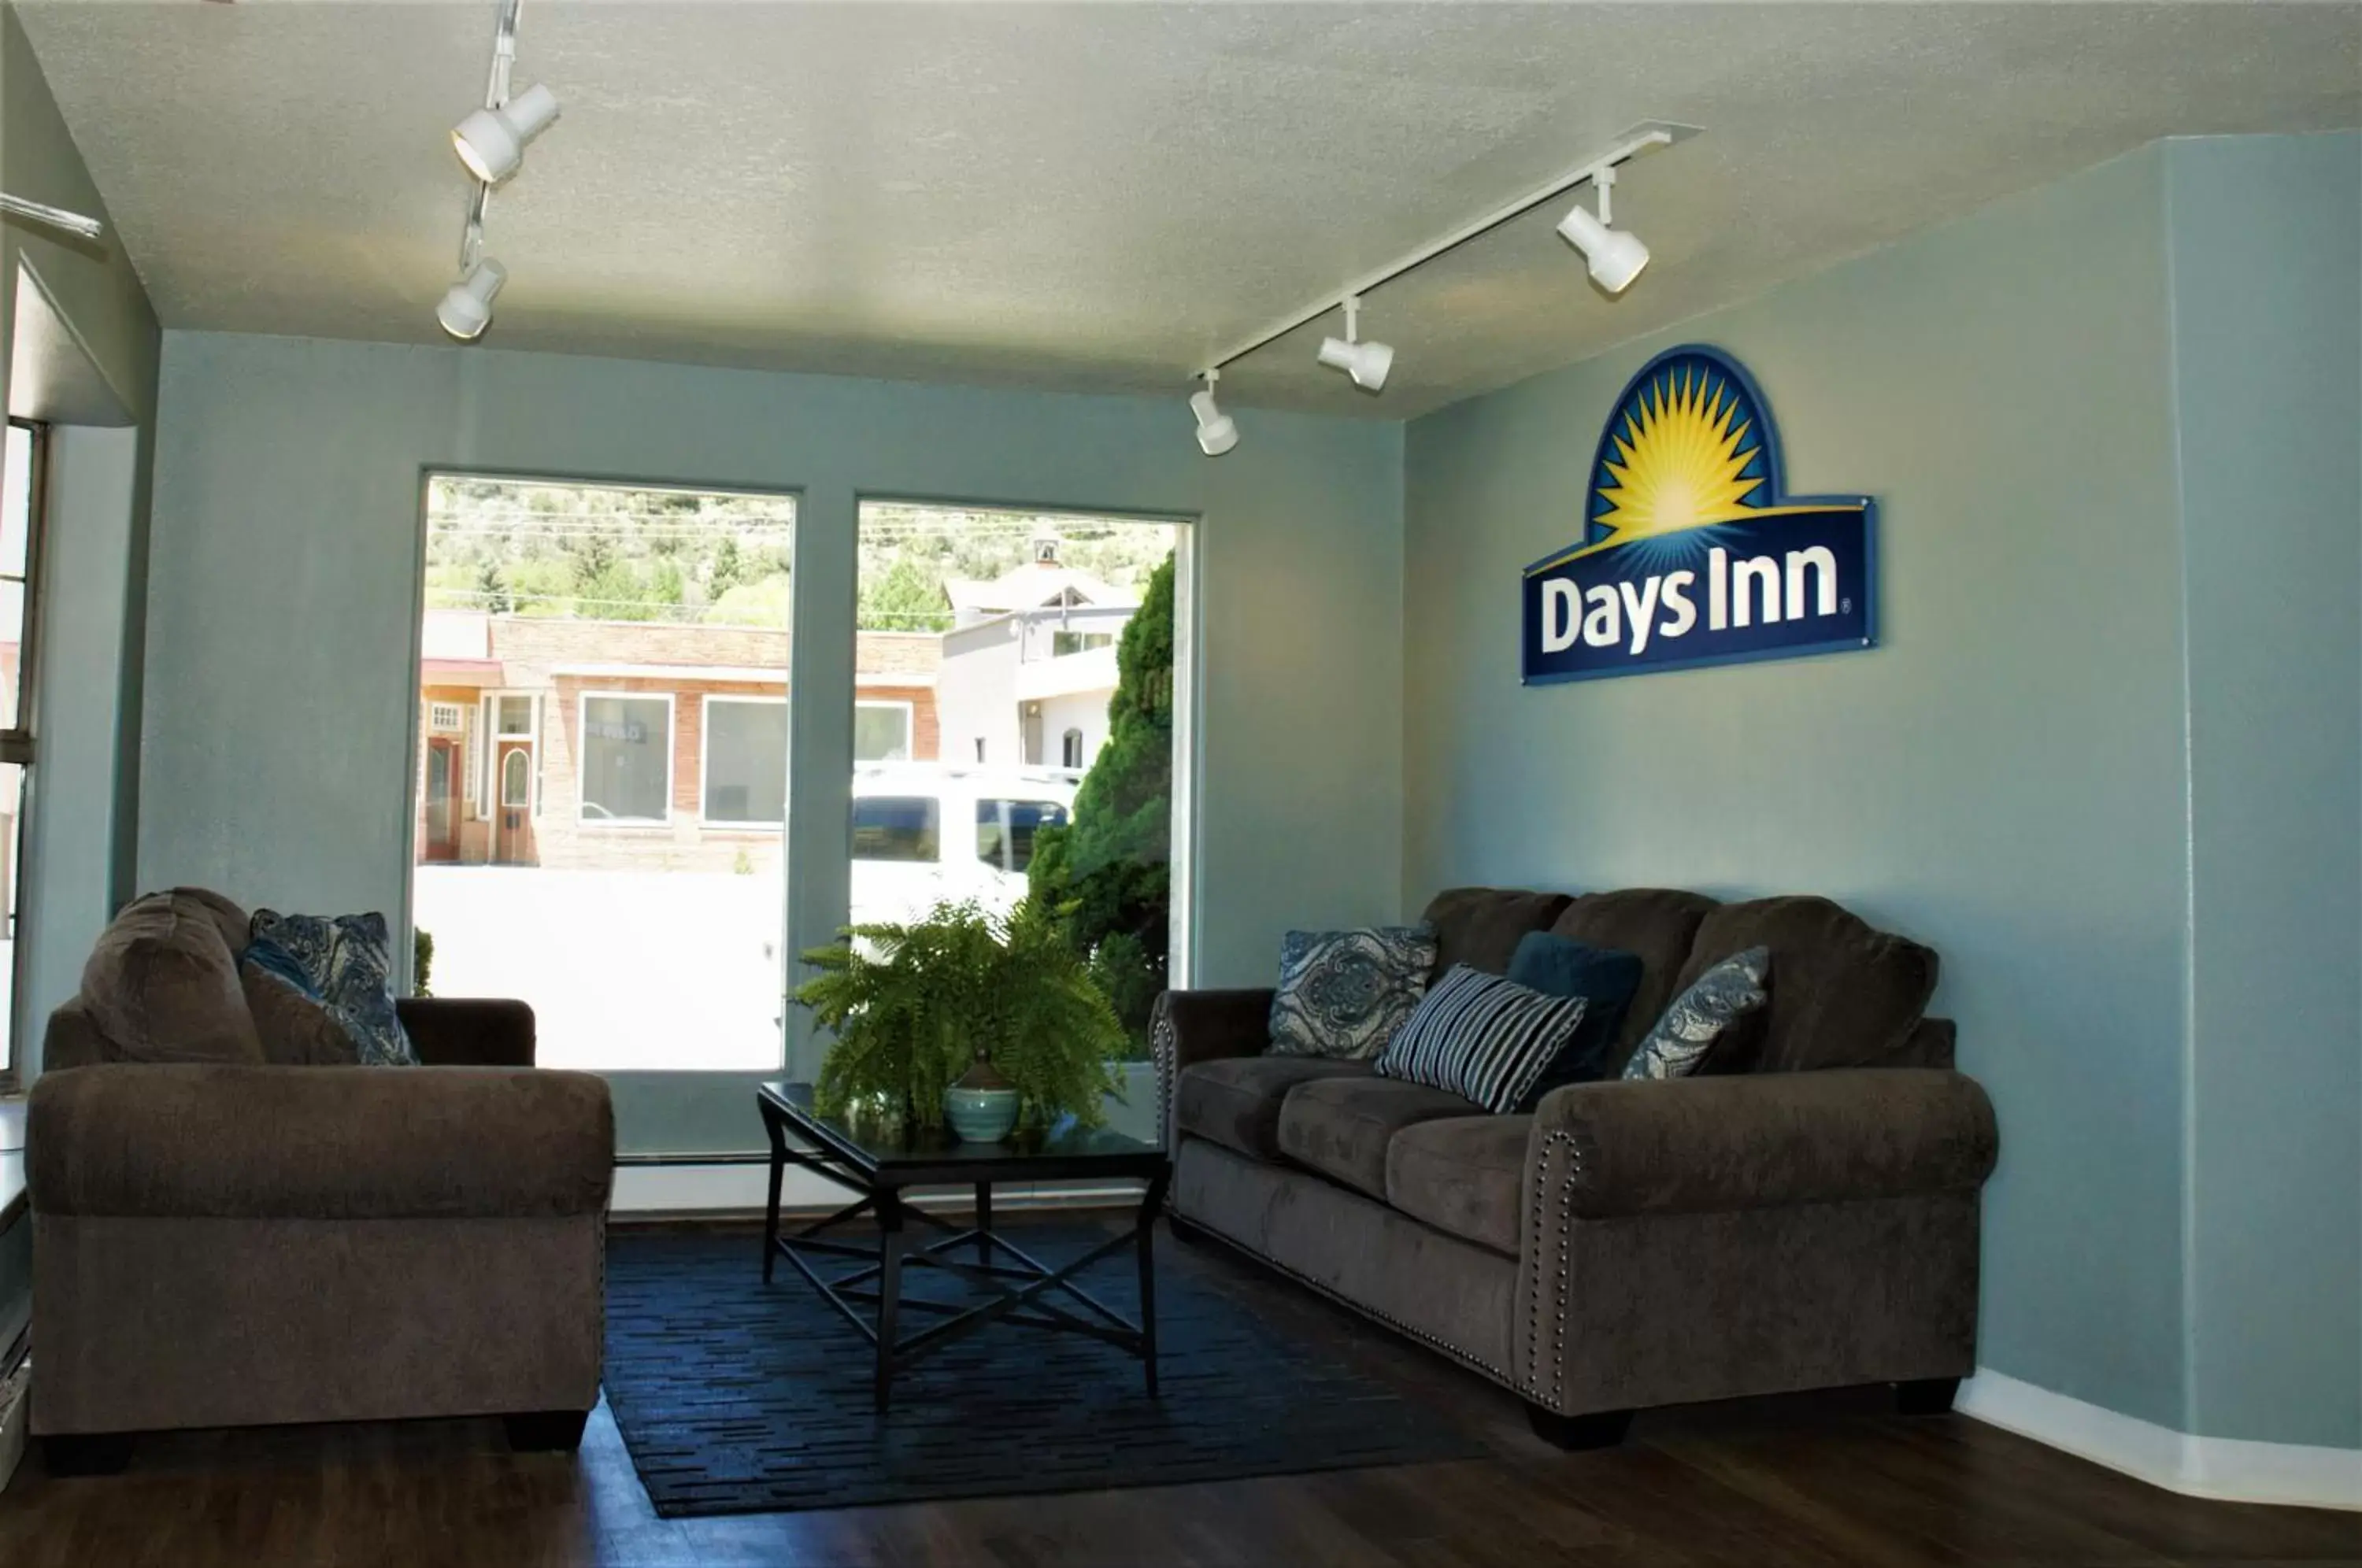 Lobby or reception, Seating Area in Days Inn by Wyndham Durango